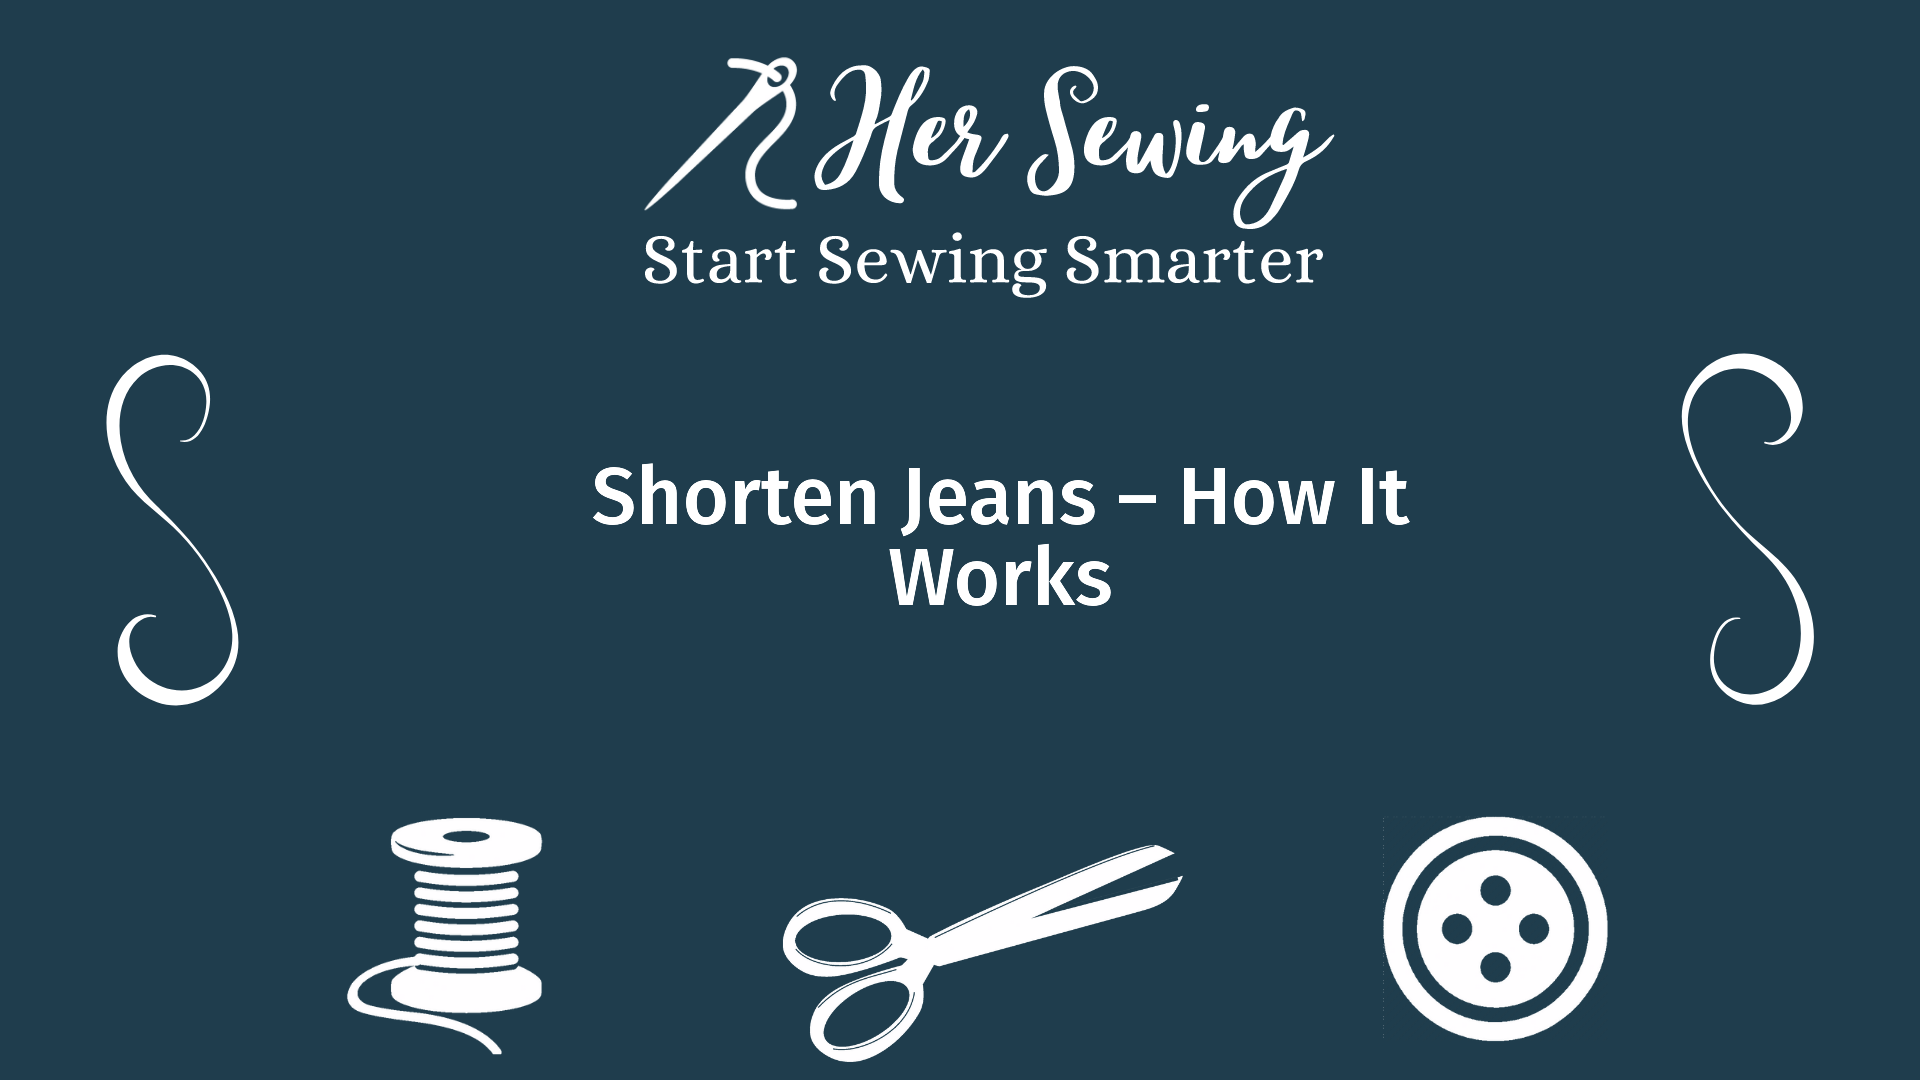 Shorten Jeans – How It Works